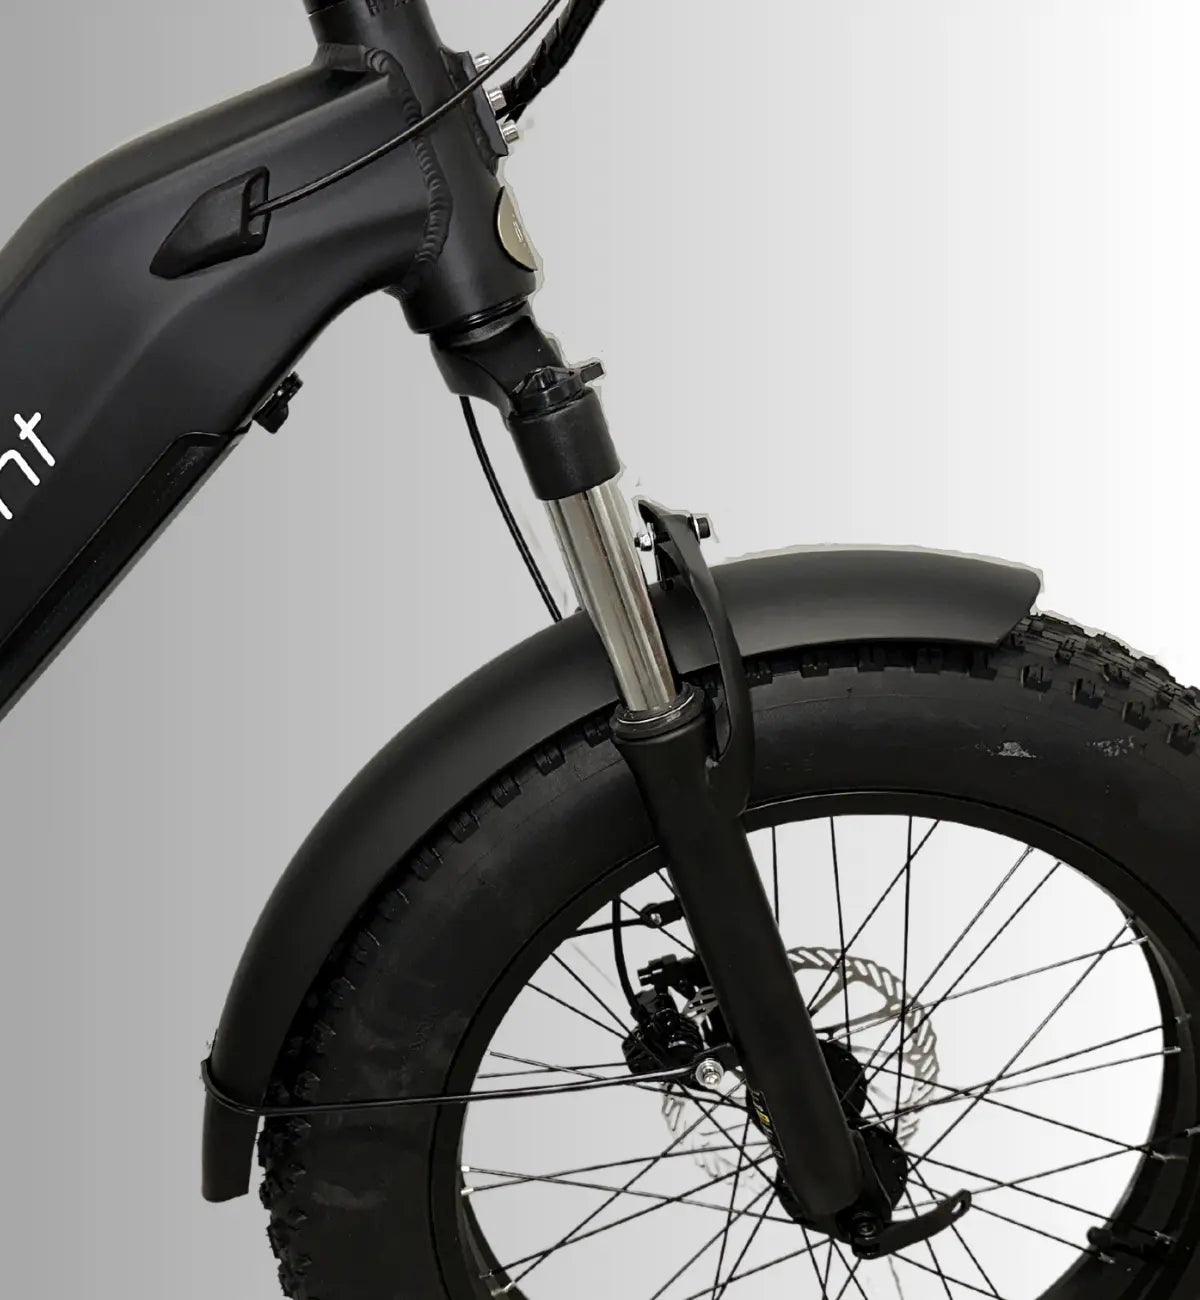 E-MOVEMENT E-BIKE - RAVEN 250W 20AH BATTERY – Long Range Step-Through Fat Electric Bike